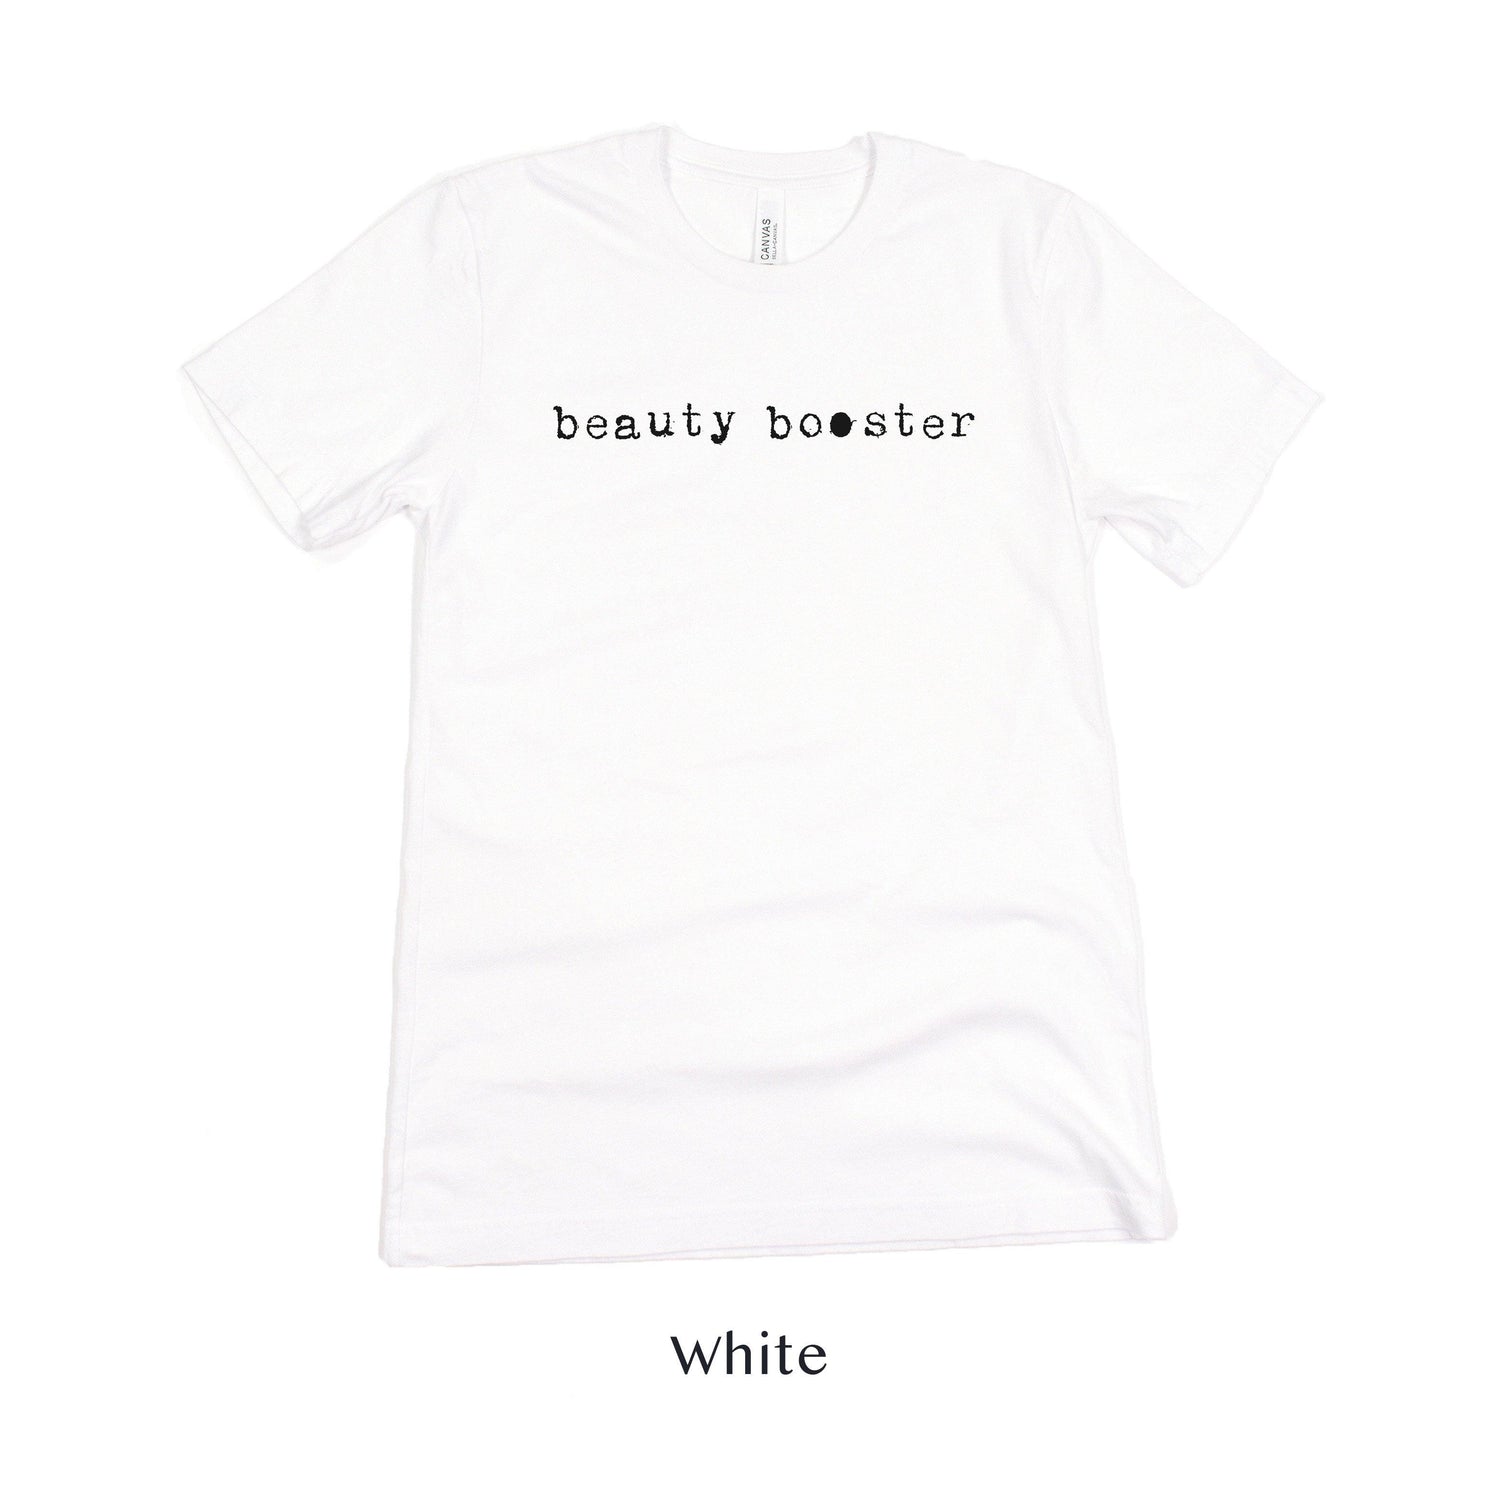 Beauty Booster - Hair and Makeup Artist shirt - HMUA Short-sleeve Tee by Oaklynn Lane - white shirt